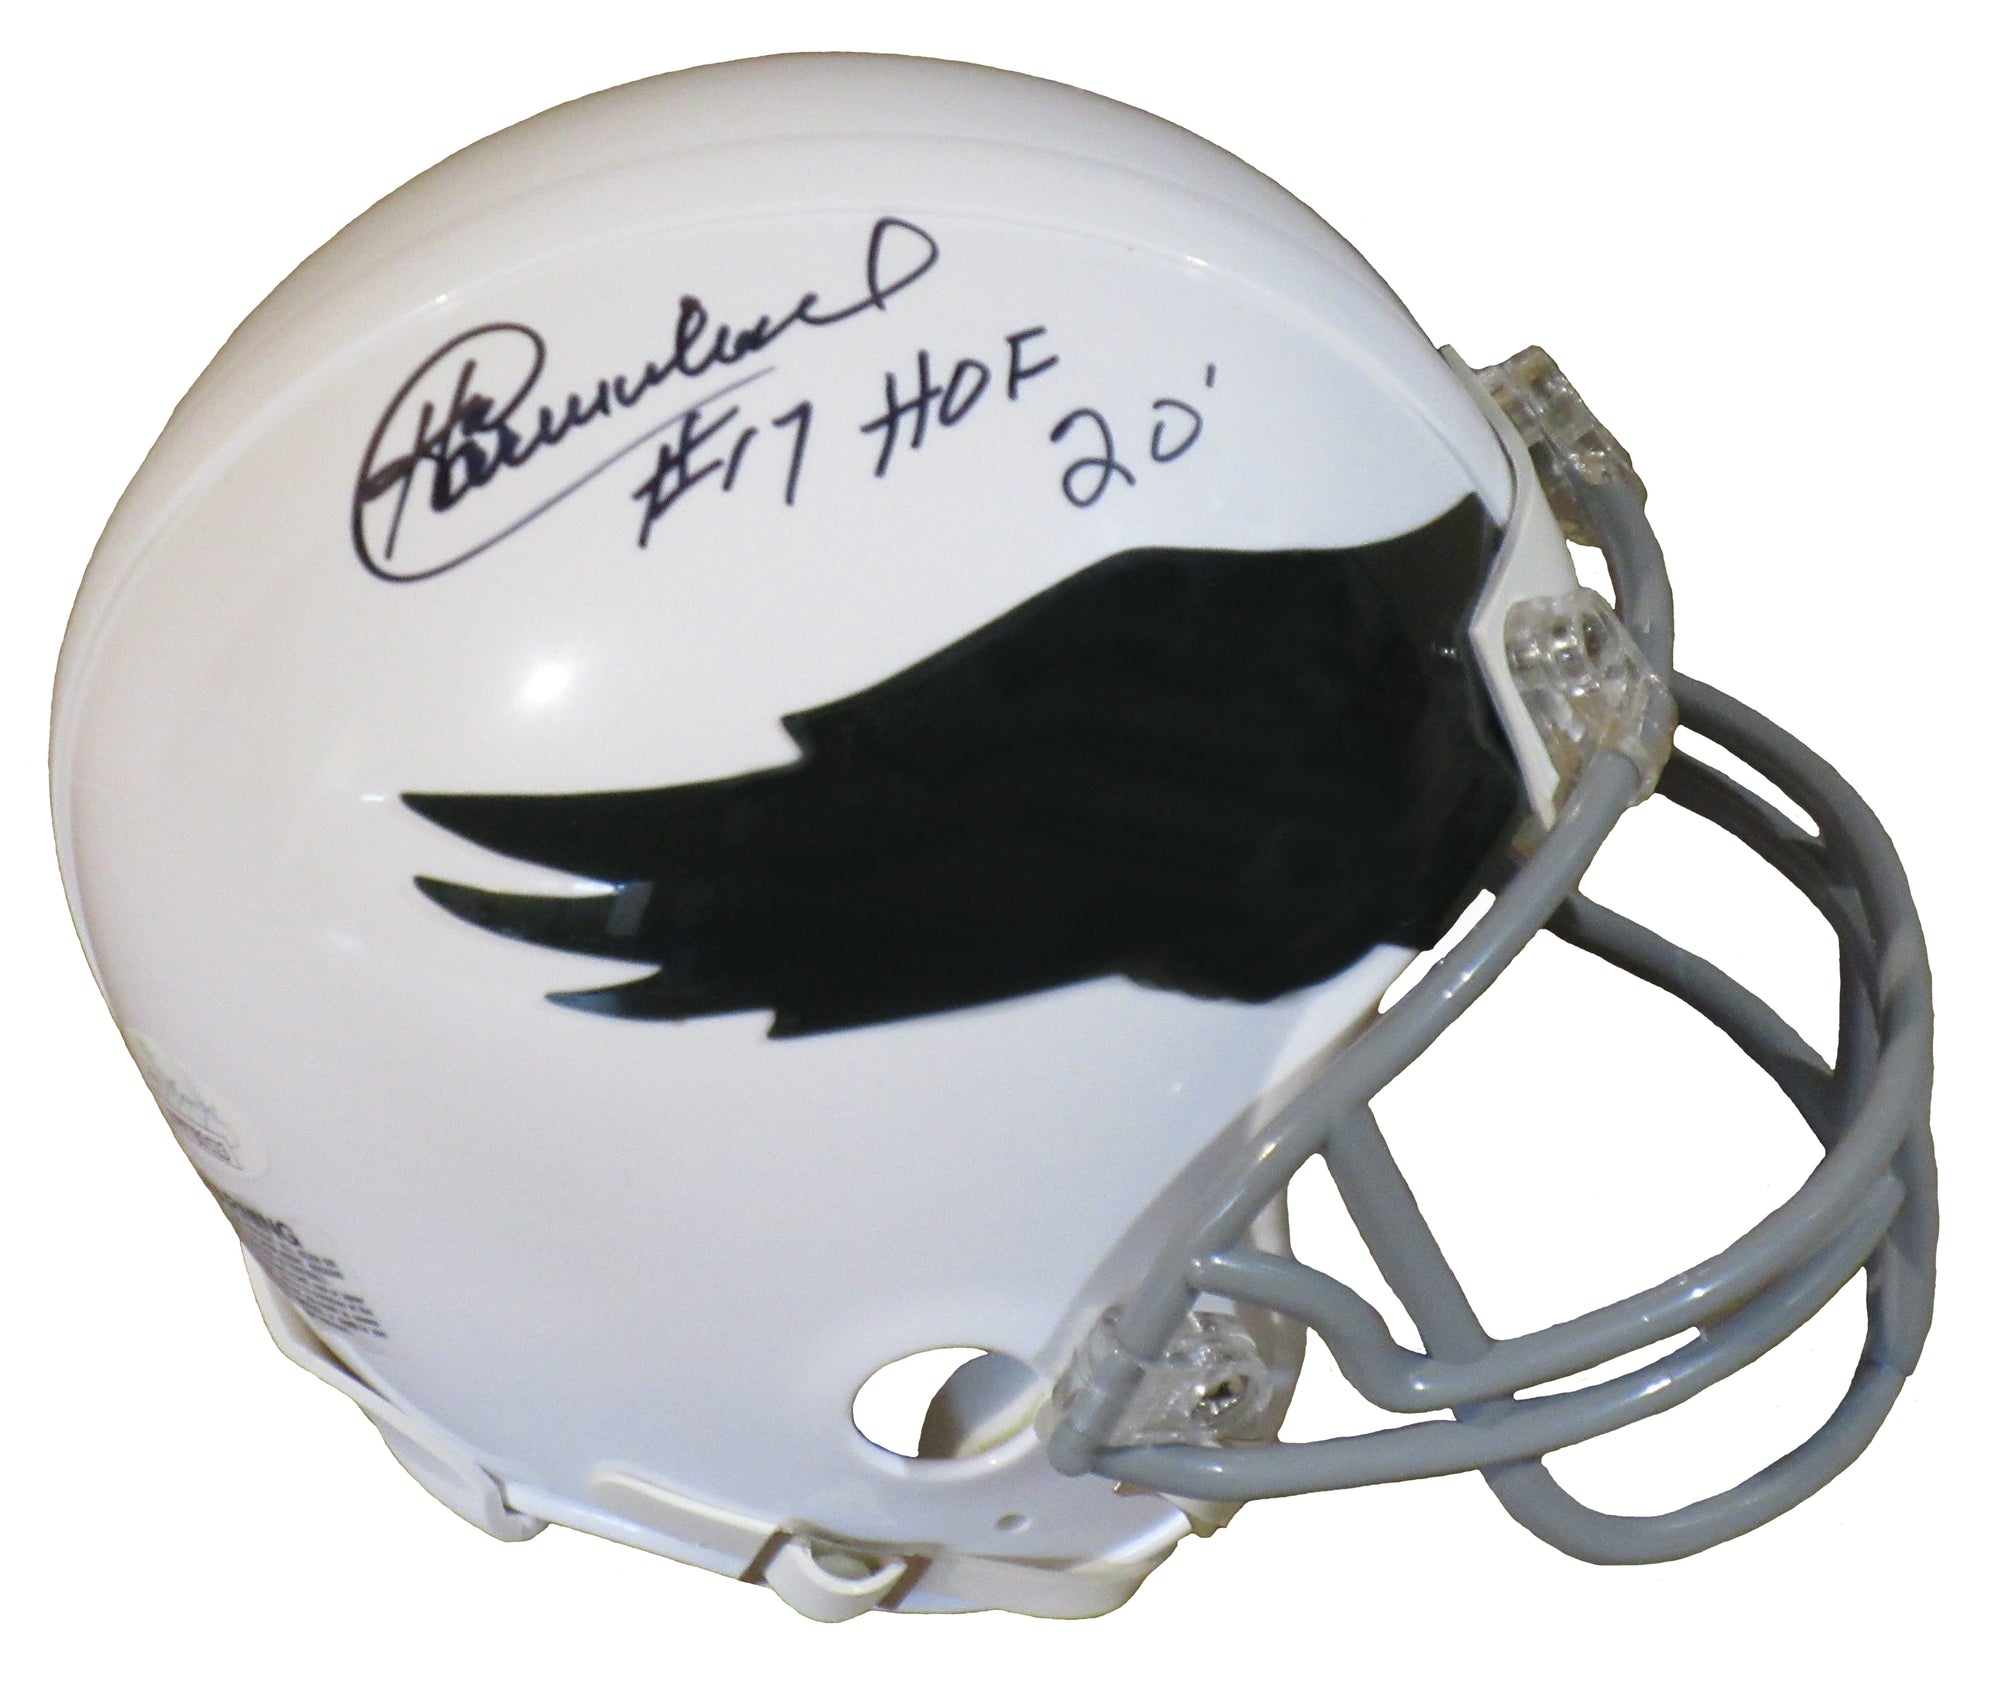 Harold Carmichael Autographed Philadelphia Eagles mini-helmet inscribed "HOF 20"